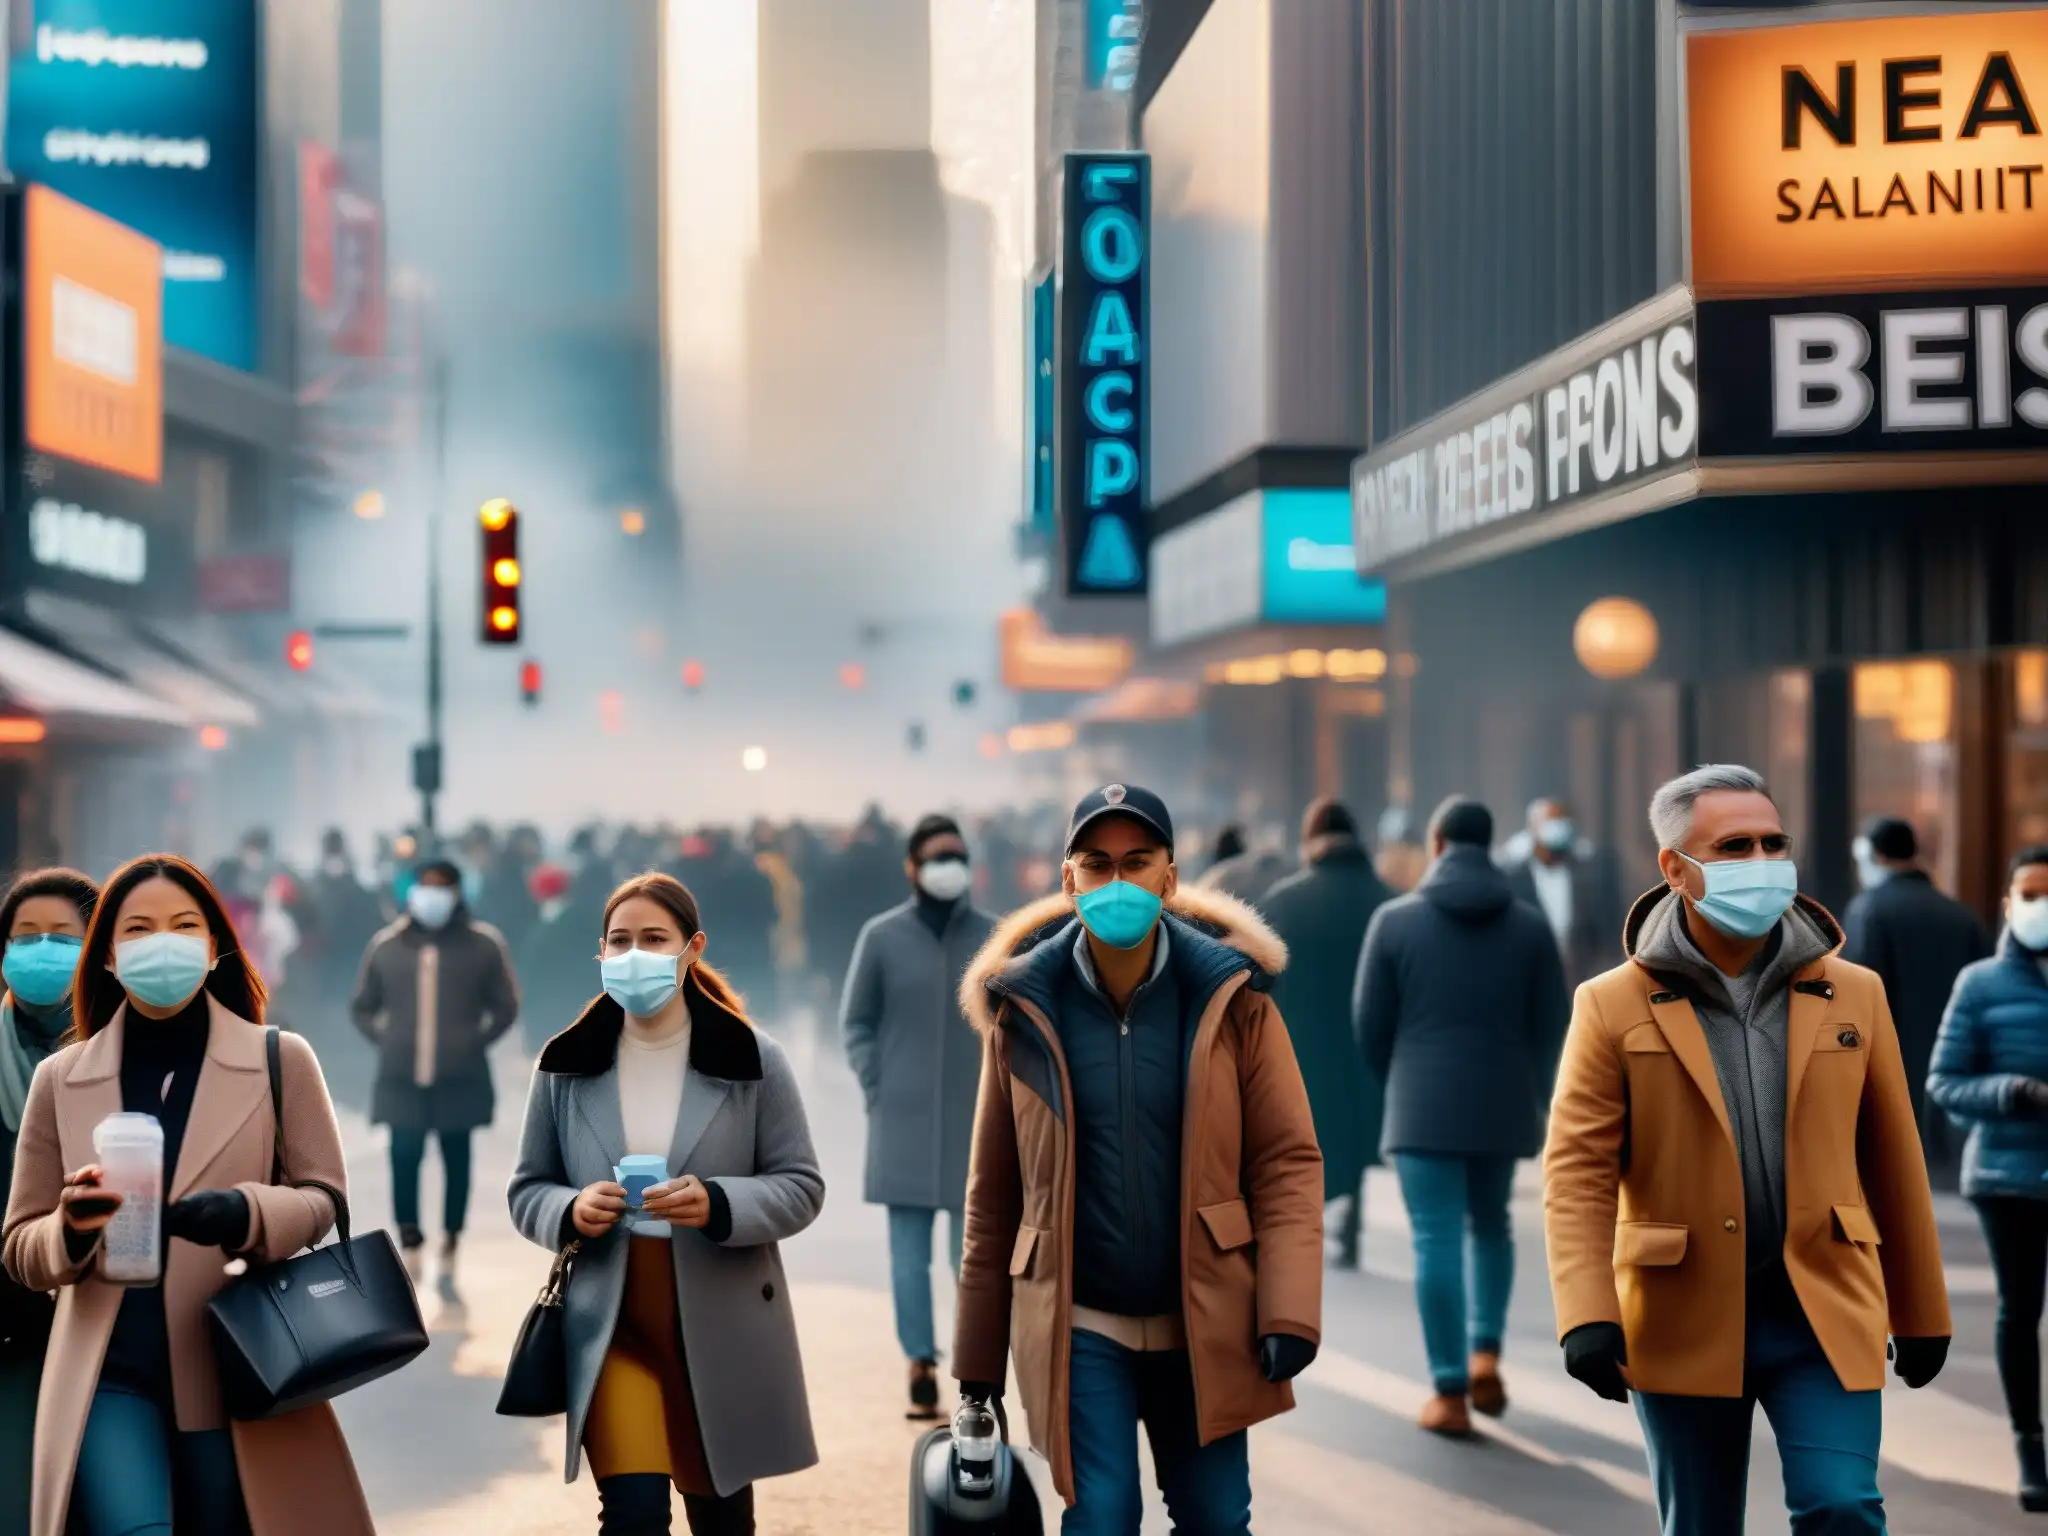 Una bulliciosa calle de la ciudad con personas usando mascarillas, estaciones de desinfectante de manos y carteles sobre prevención de enfermedades